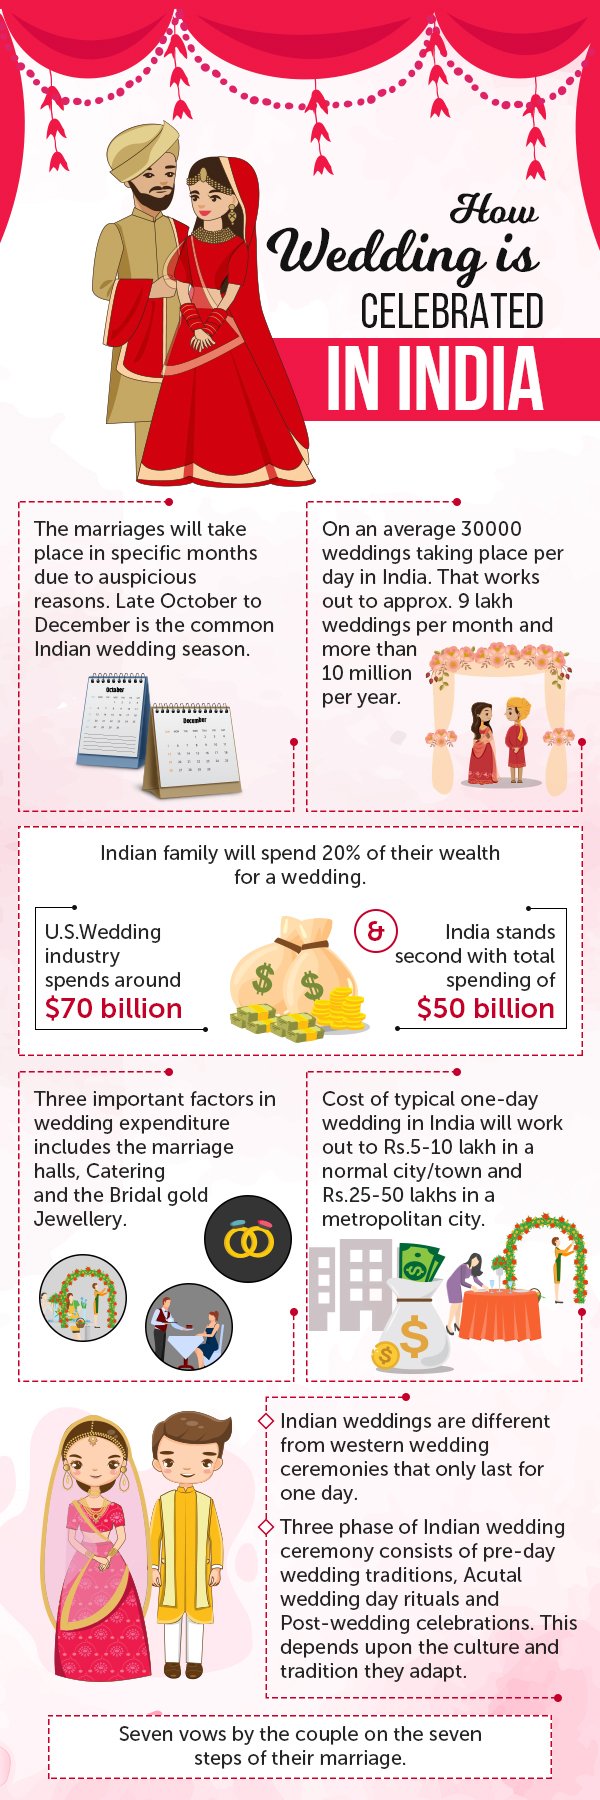 Grandiose Weddings In India